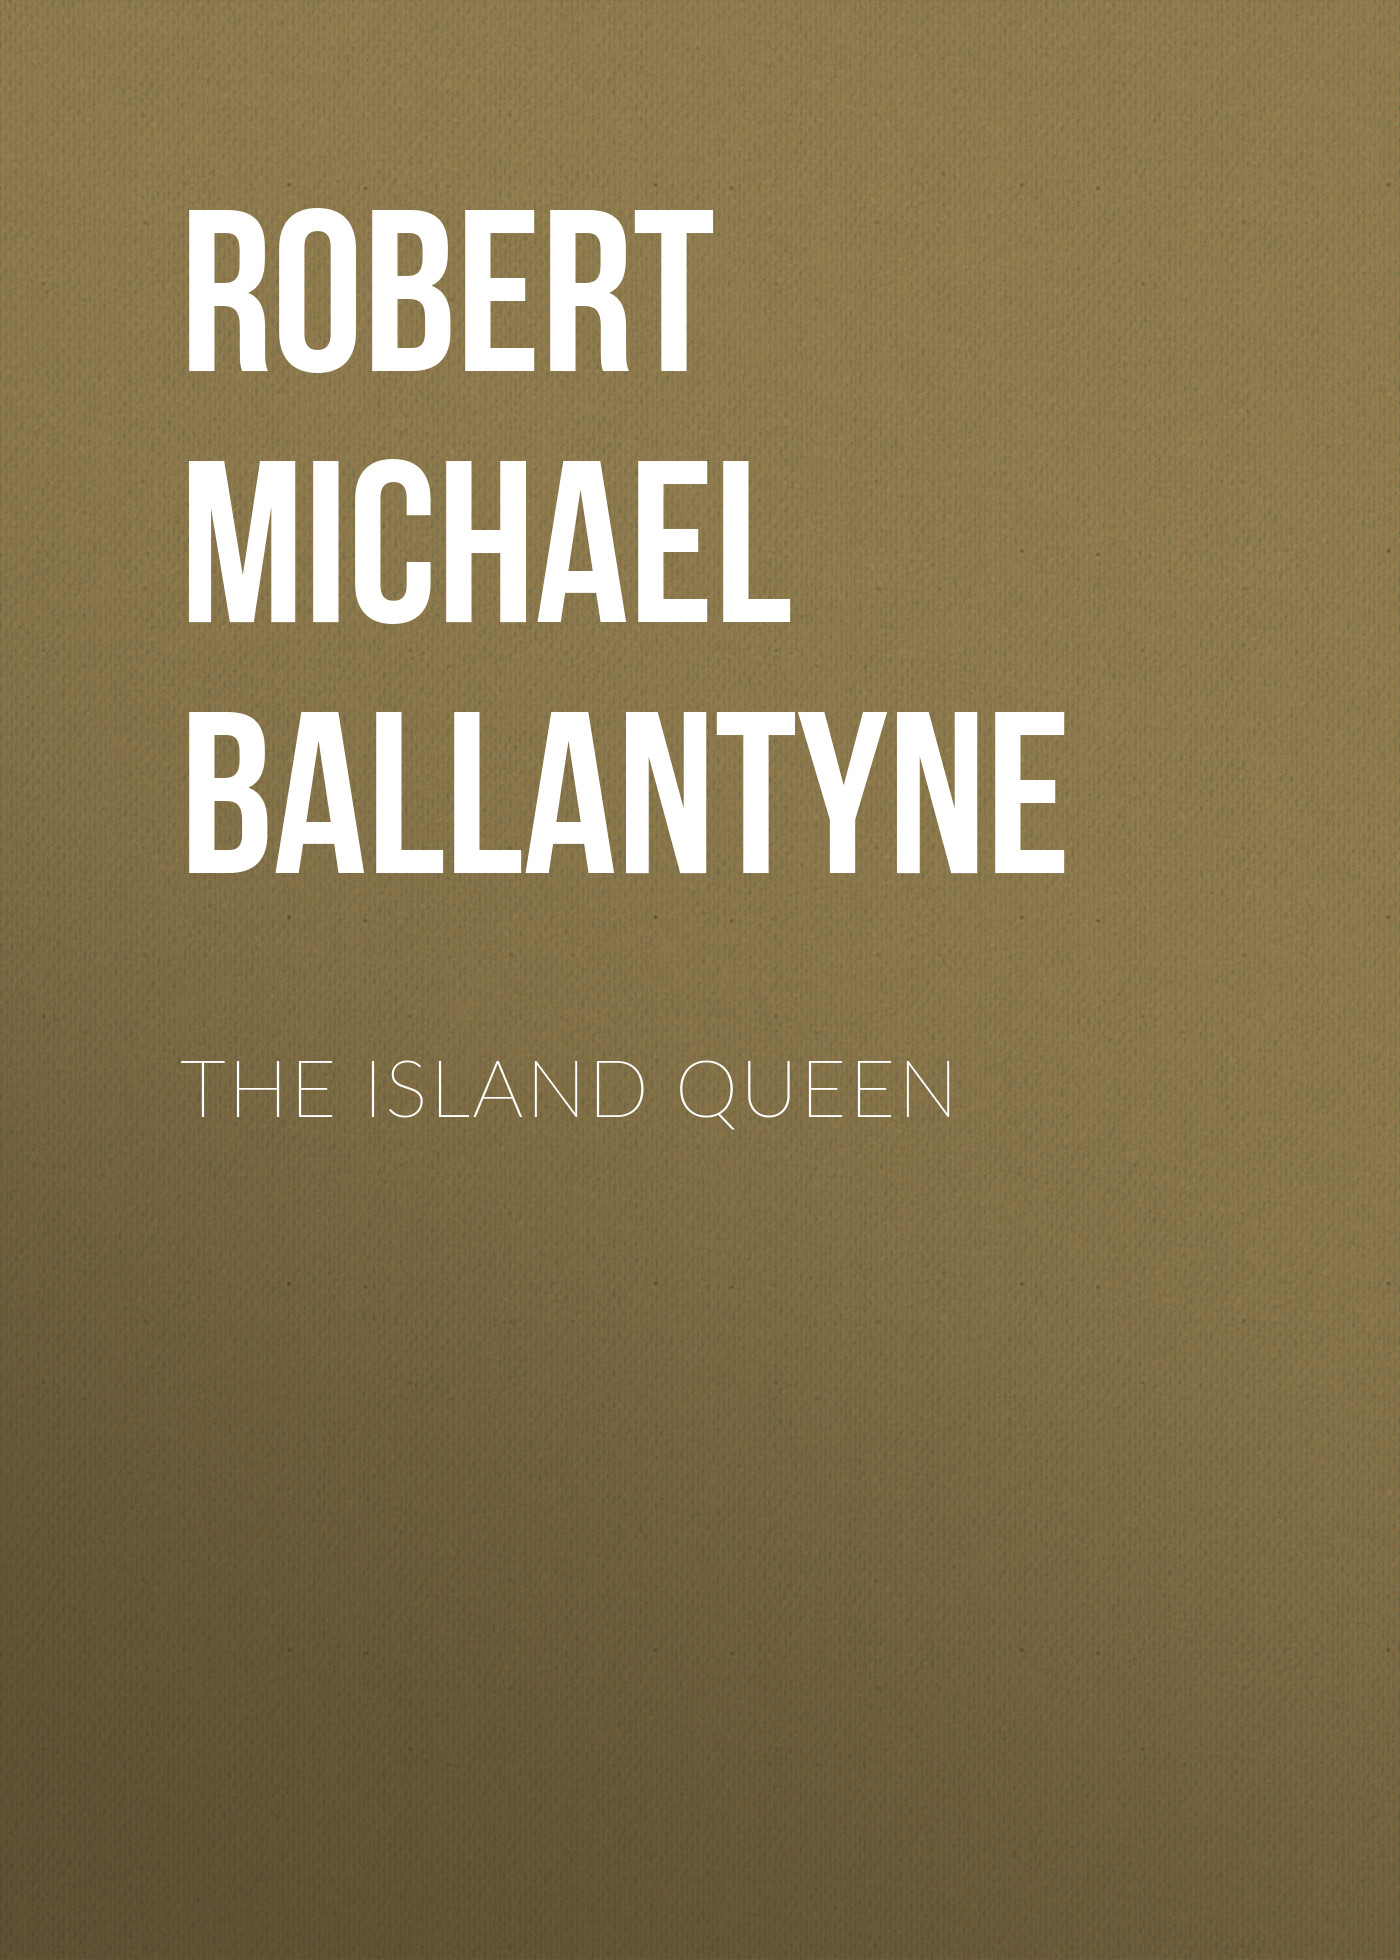 Книга The Island Queen из серии , созданная Robert Michael Ballantyne, может относится к жанру Детские приключения, Литература 19 века, Зарубежная старинная литература, Зарубежная классика, Зарубежные детские книги. Стоимость электронной книги The Island Queen с идентификатором 36095229 составляет 0 руб.